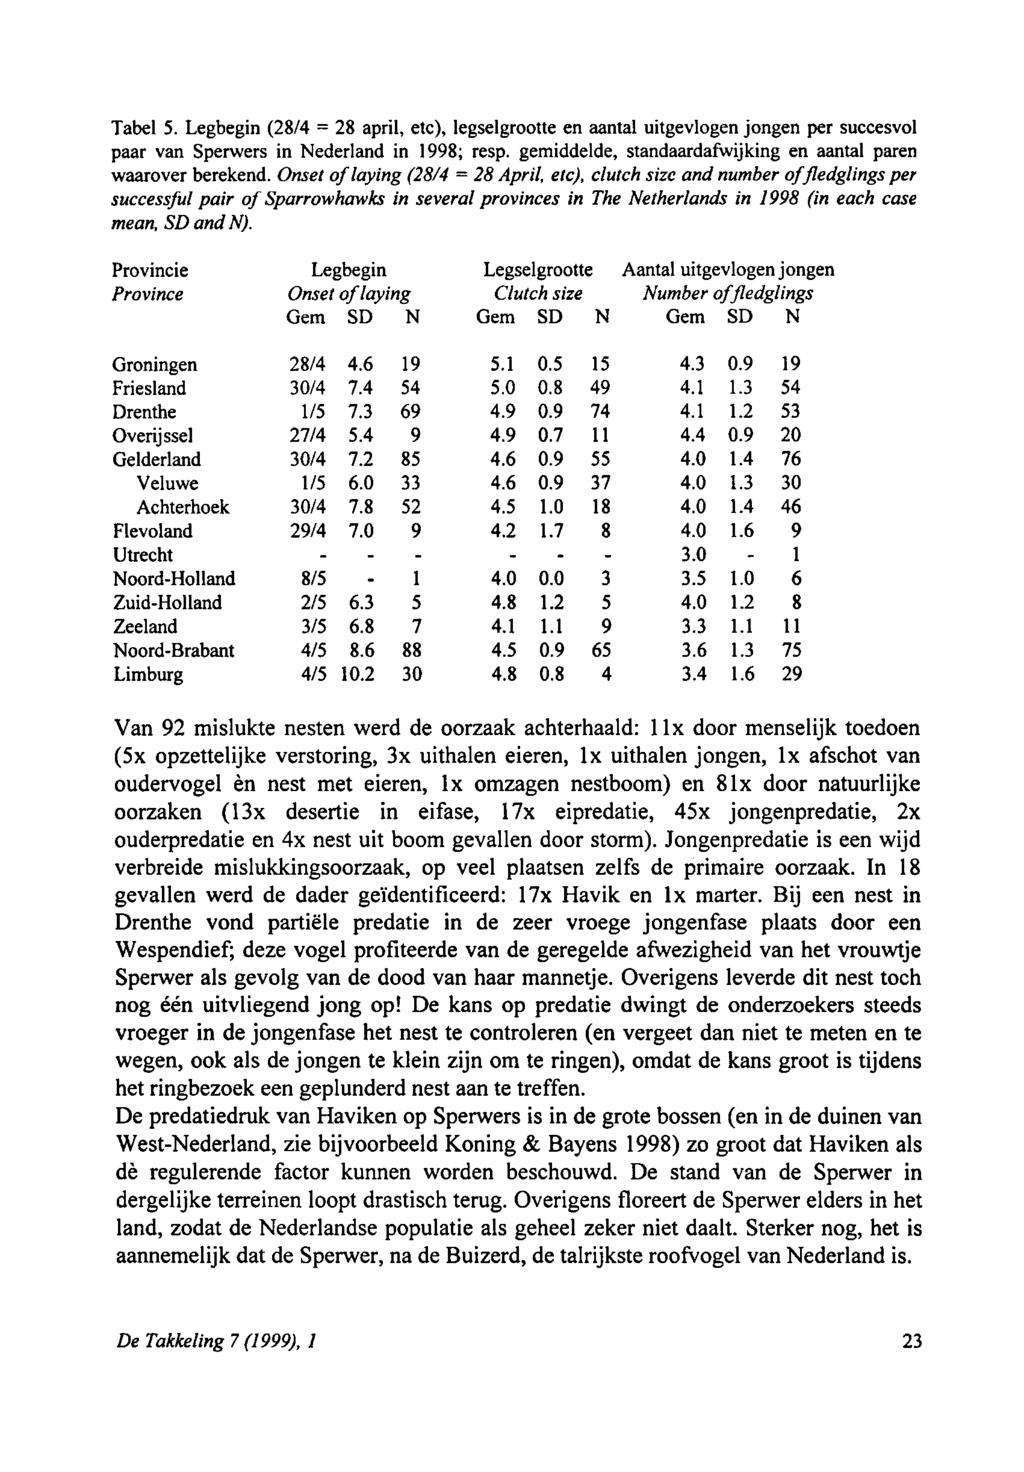 3.0 Tabel 5. Legbegin (8/4 8 april, etc), legselgrootte = en aantal uitgevlogen jongen per succesvol paar van Sperwers in Nederland in 998; resp.